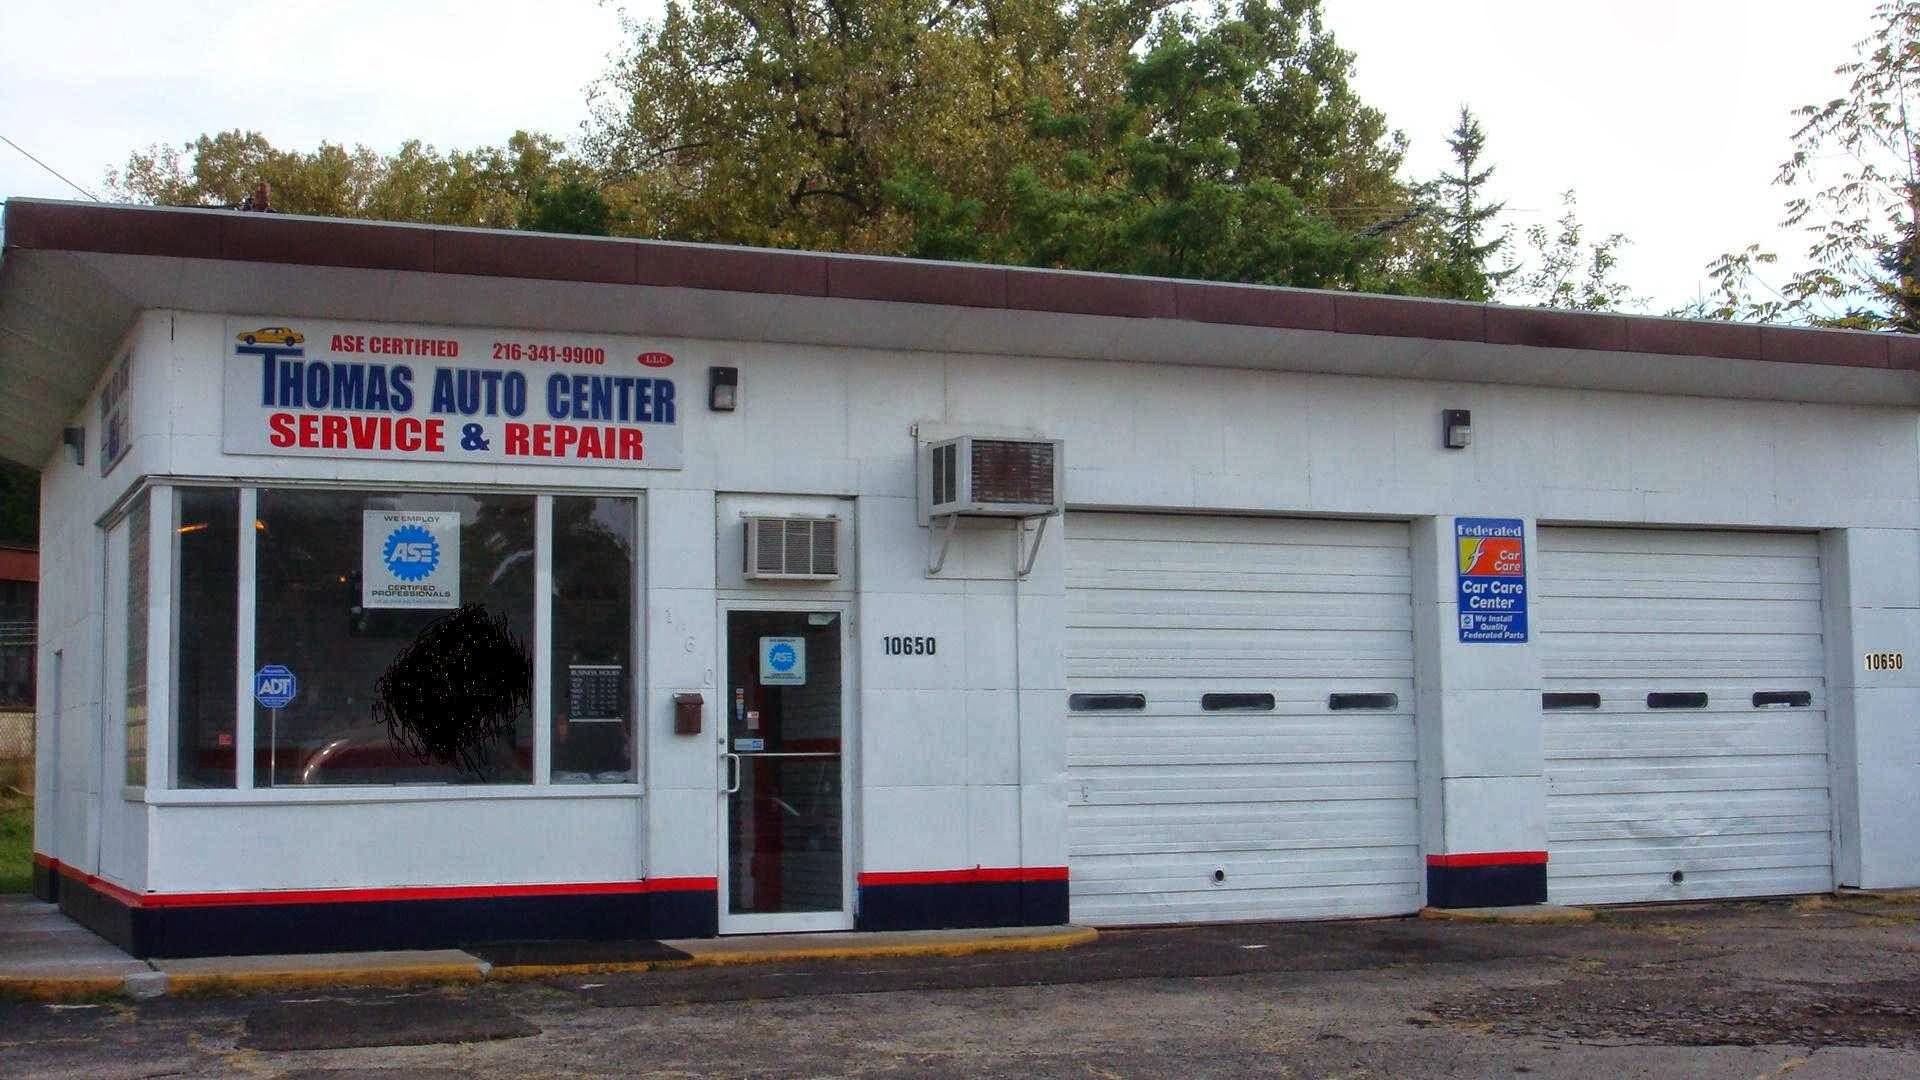 The Thomas Auto Center